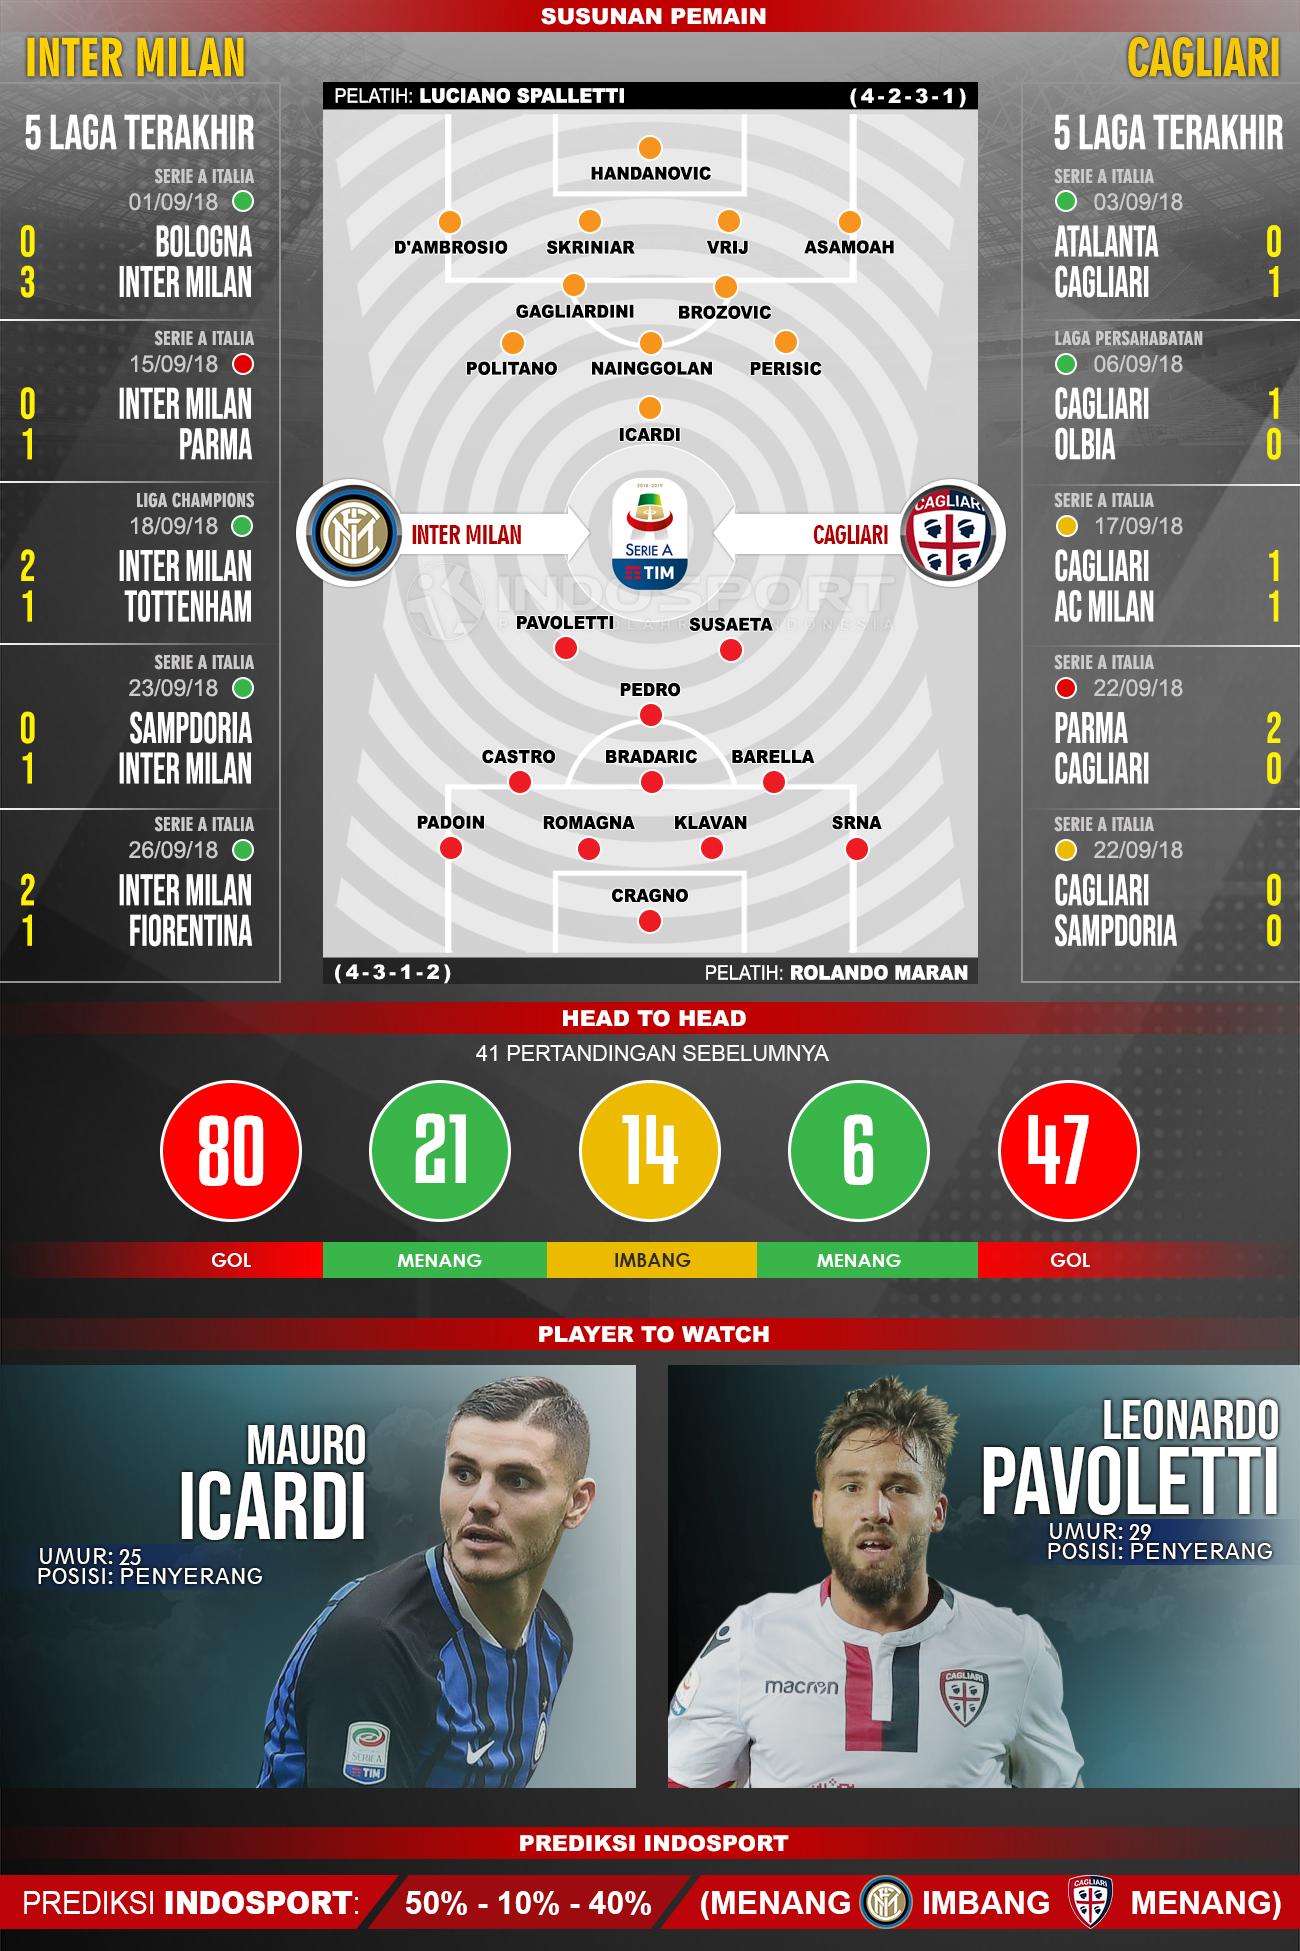 Inter Milan vs Cagliari (Susunan Pemain - Lima Laga Terakhir - Player to Watch - Prediksi Indosport) Copyright: INDOSPORT